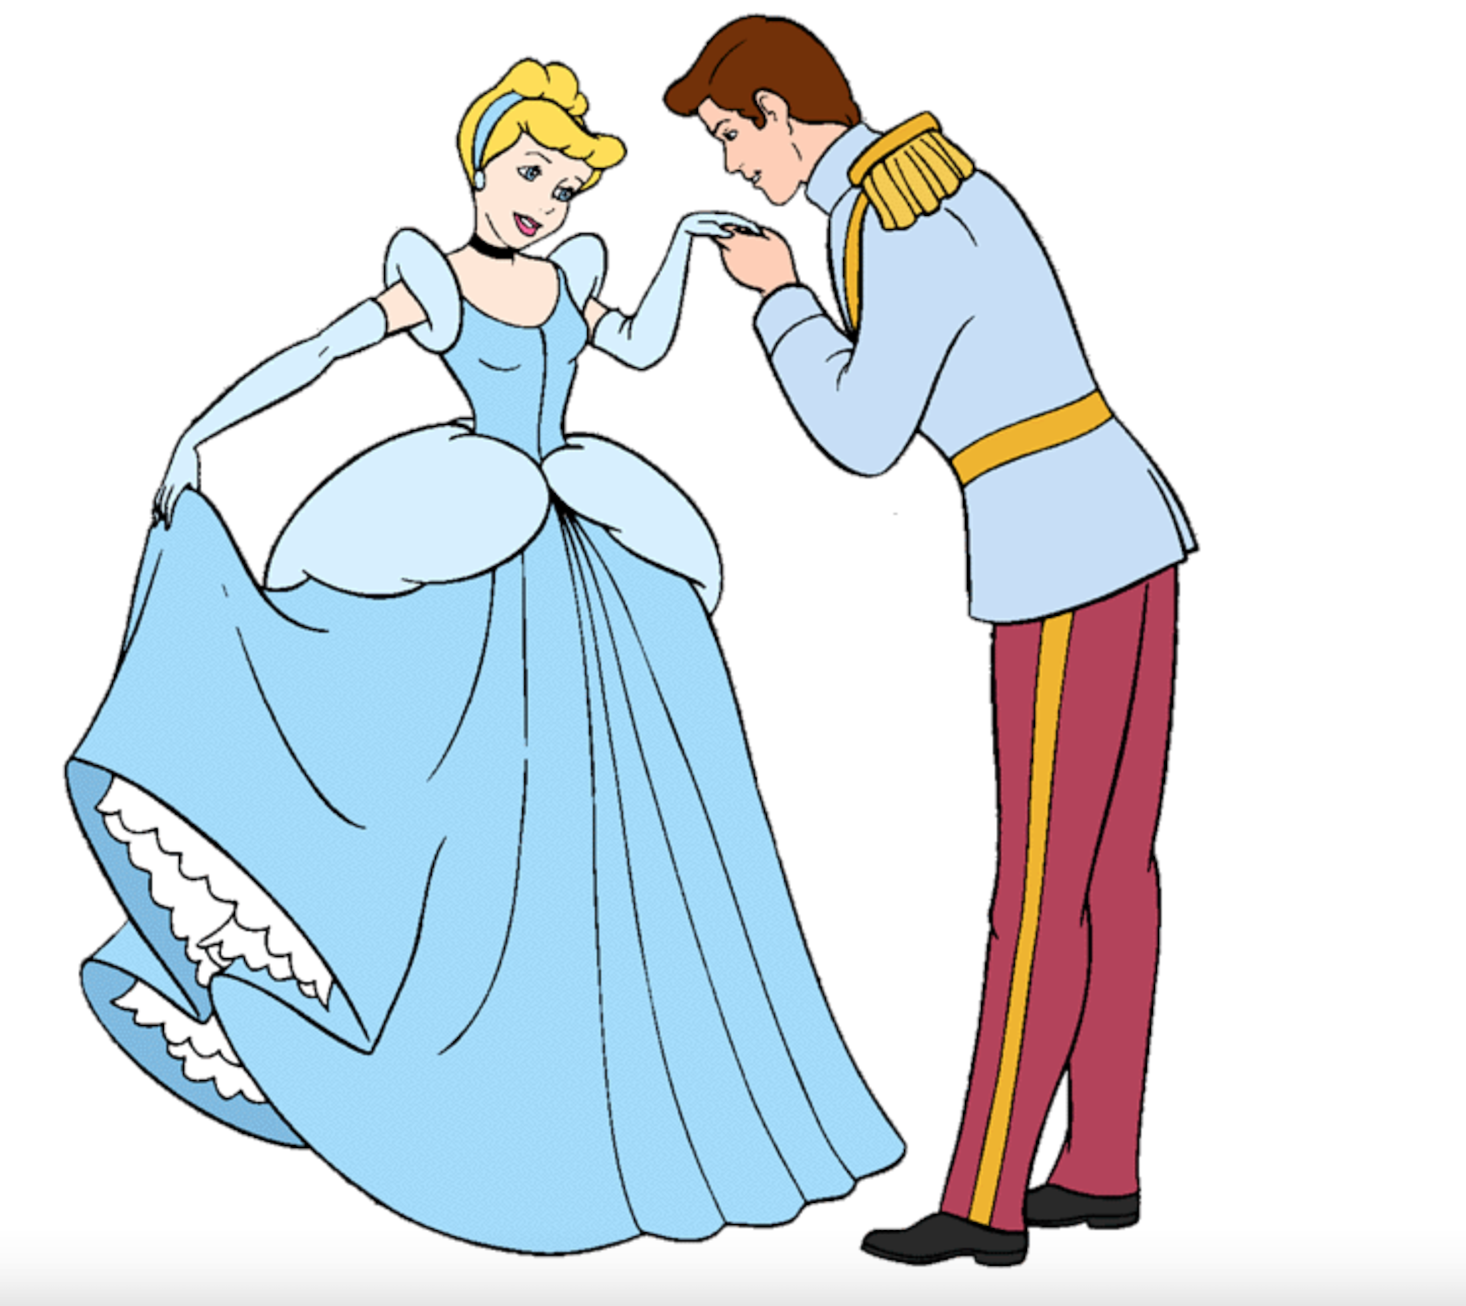 Золушка 1950 принц. Принцесса Золушка и принц. Золушка и принц Дисней. Принс Золушки. Бал детский рисунок